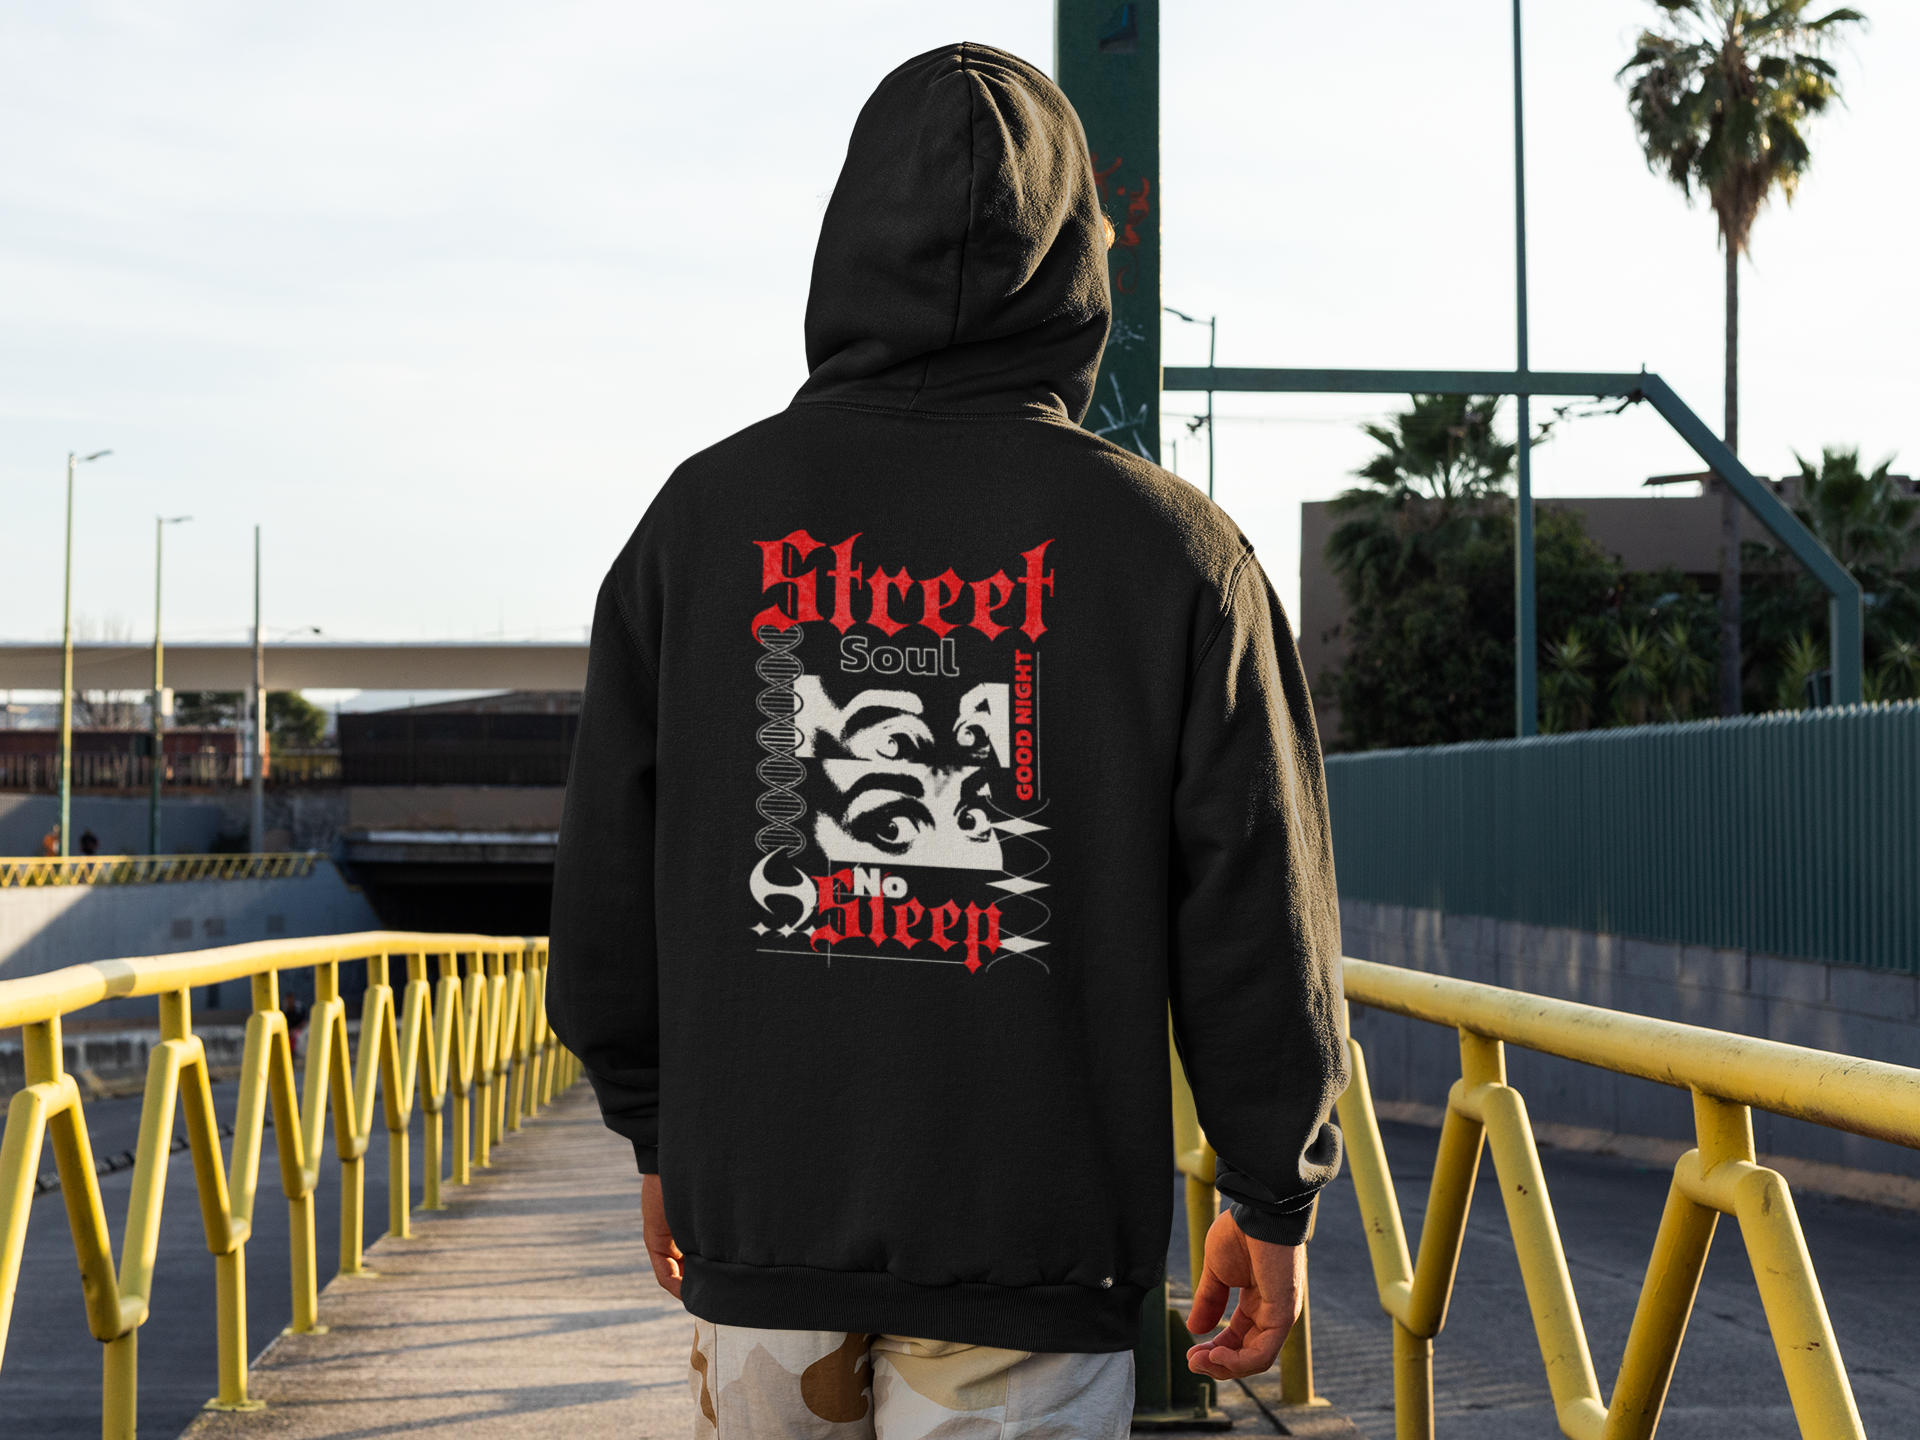 Street Soul Hooded Sweatshirt - GFTD MNDS